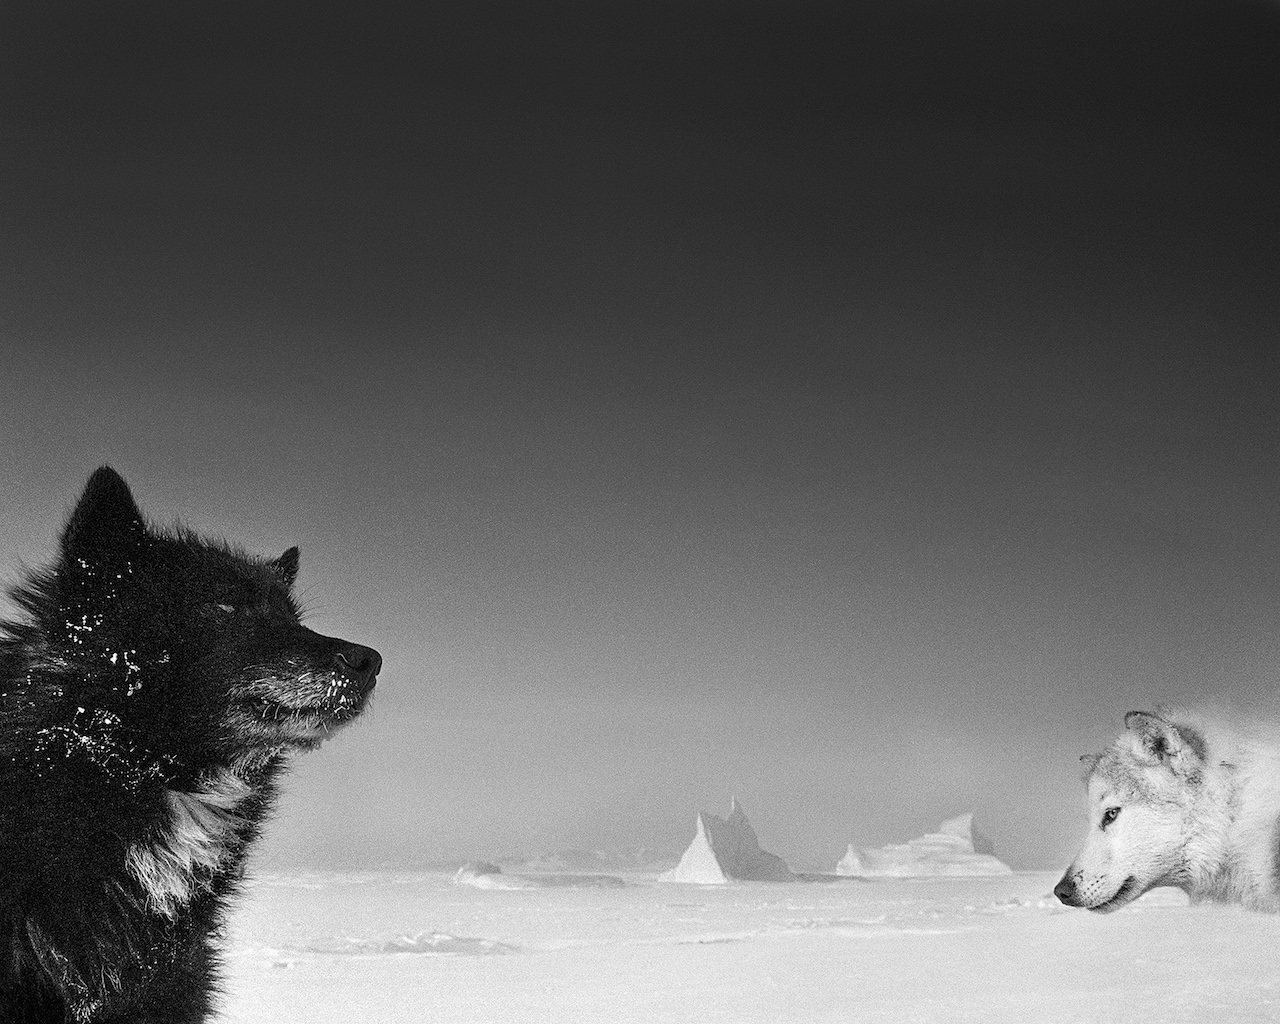 Tre fotografi raccontano l'Artico. La mostra a tre oci Venezia